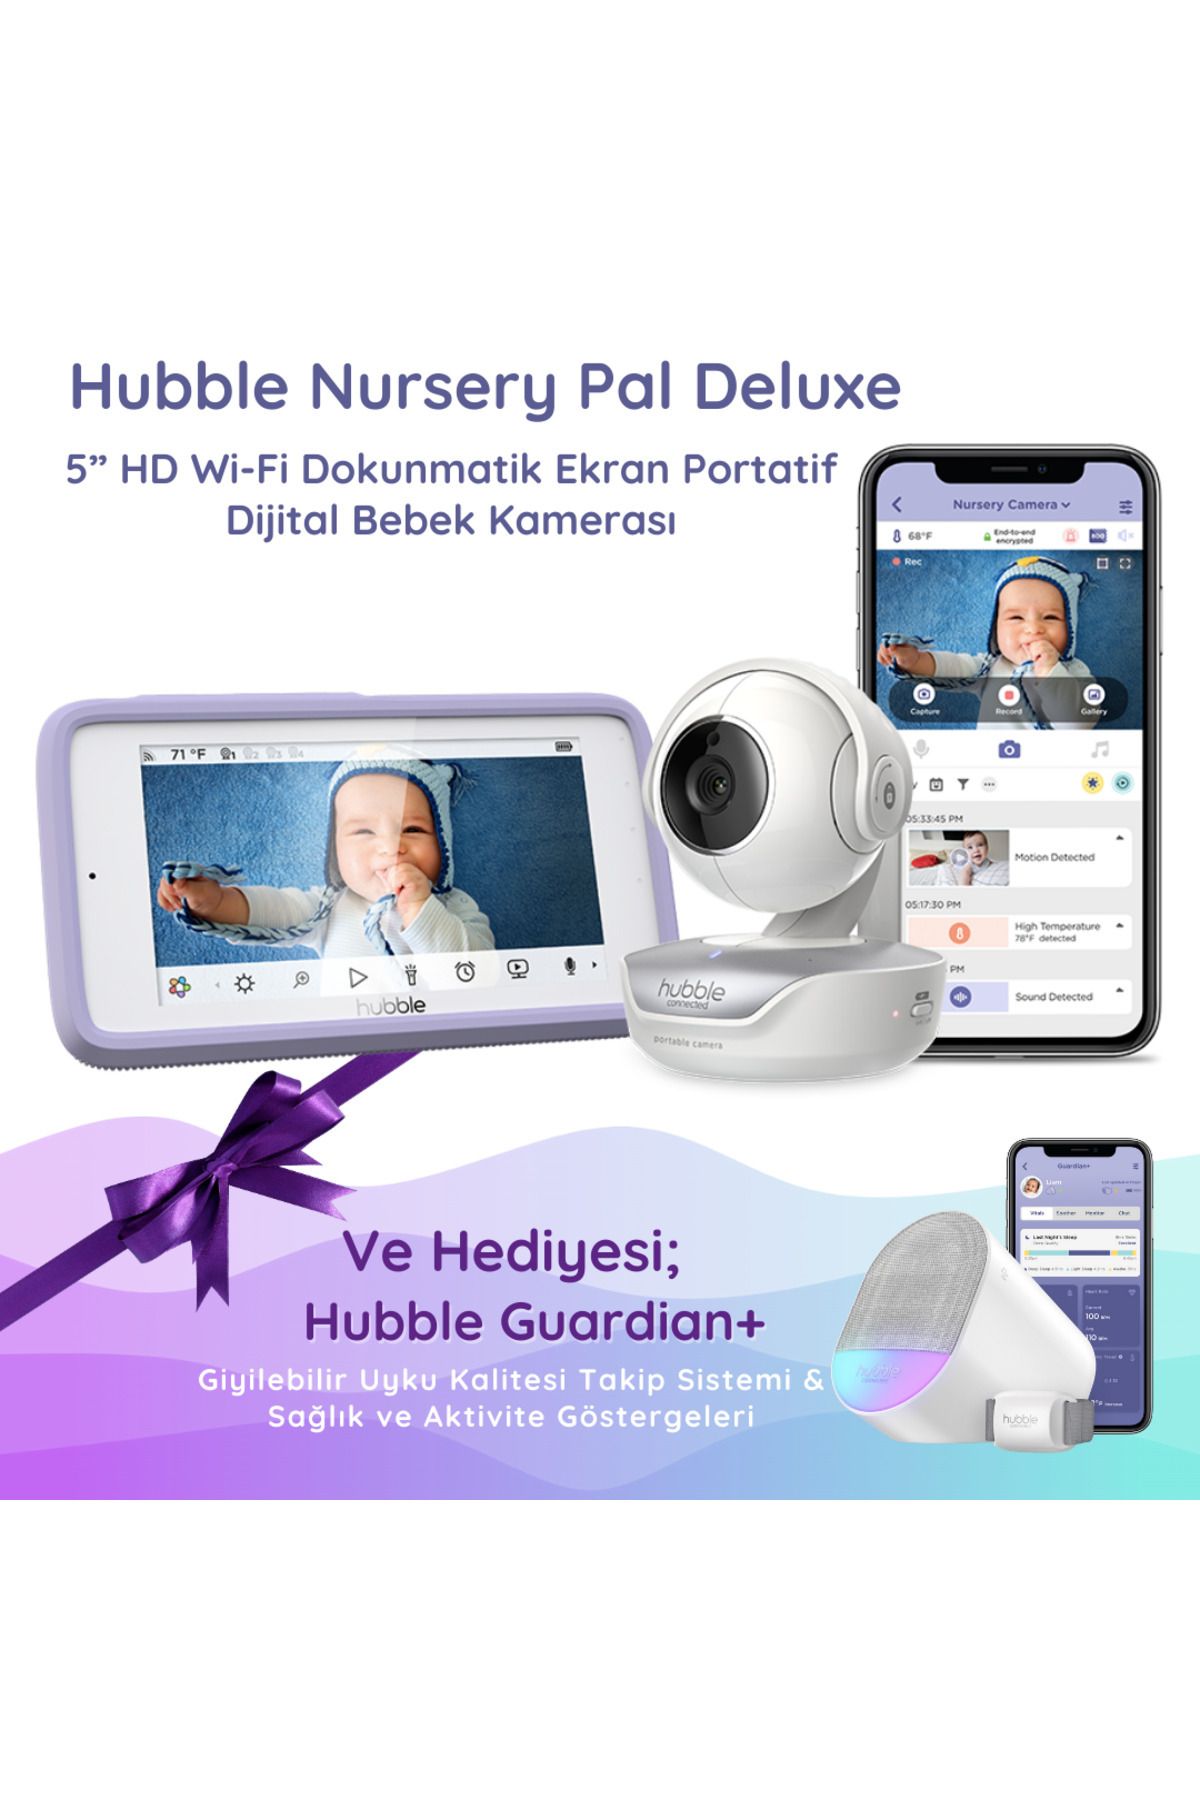 Hubble NurseryPal Deluxe5”HD Wifi Dijital Bebek Kamerası&Hubble Guardian+ Takip sistemi